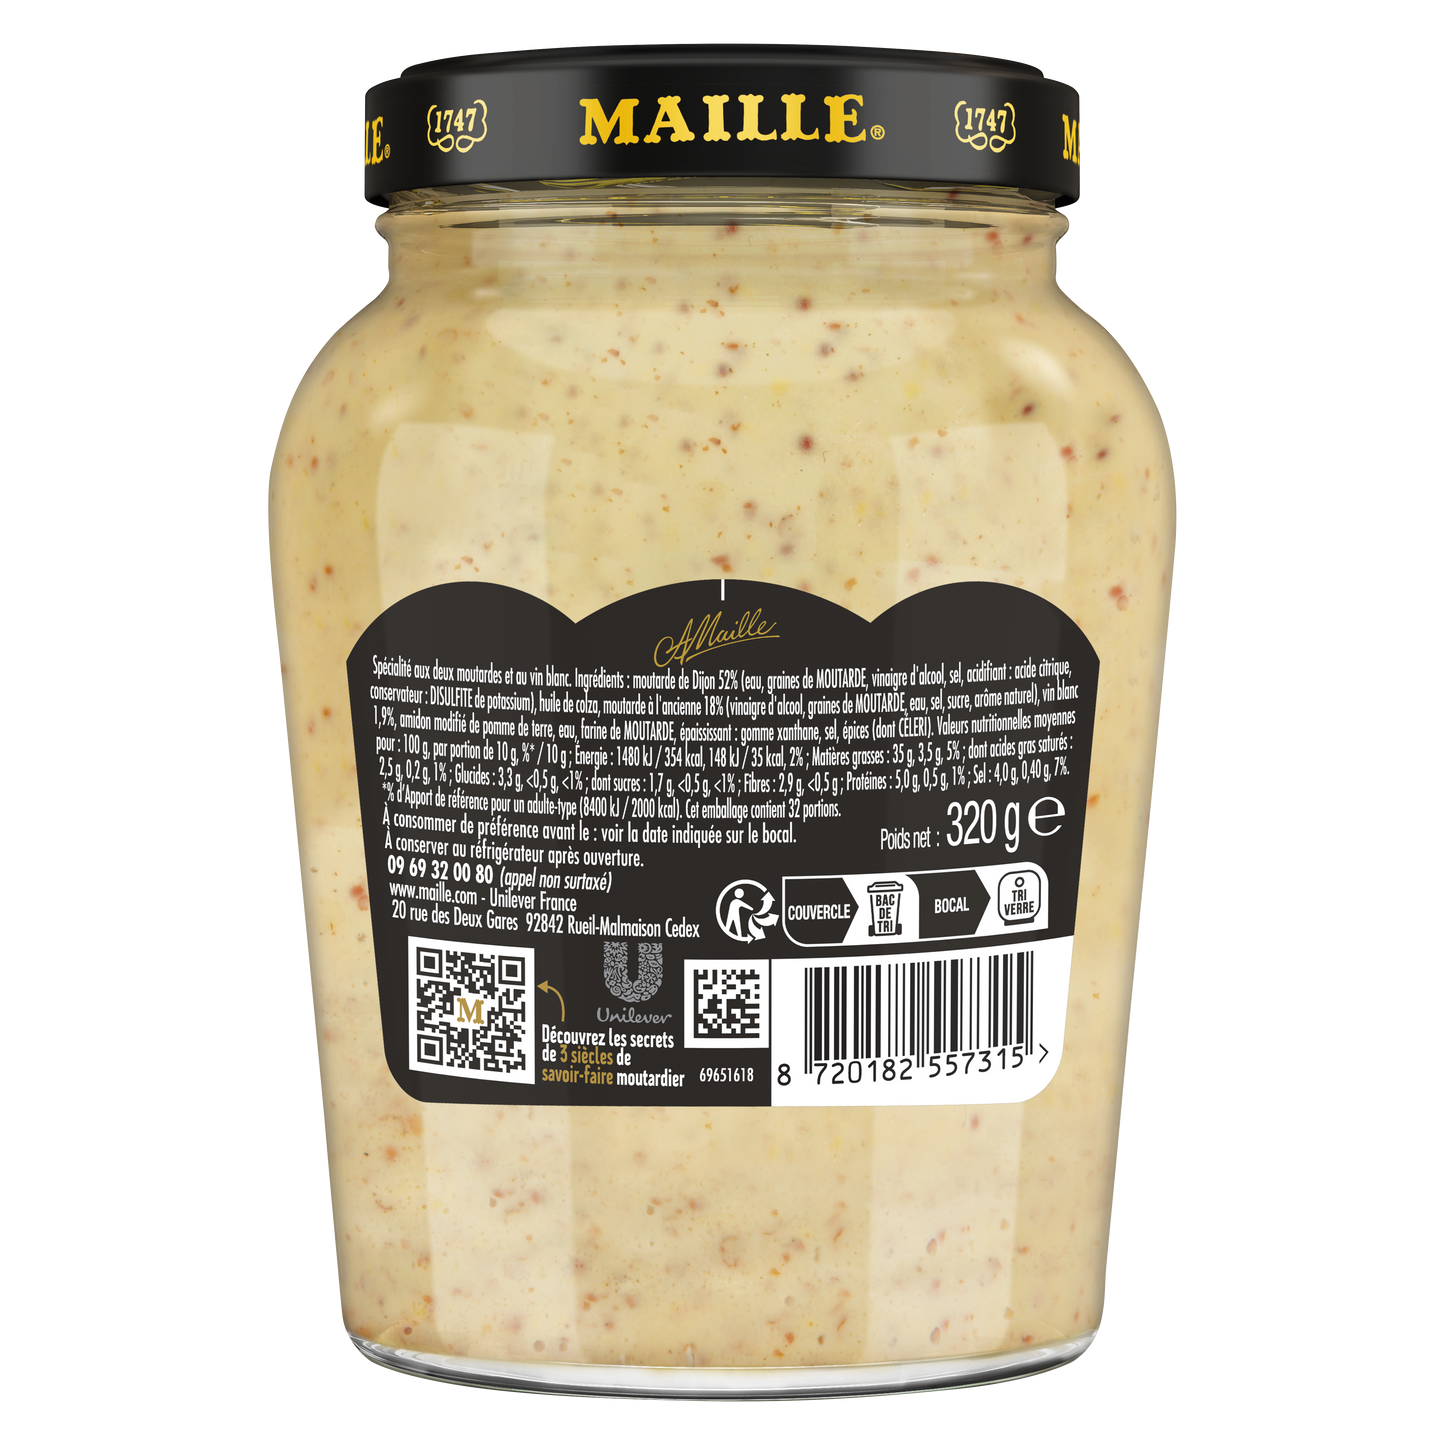 Maille Fins Gourmets L'Originale spécialité aux deux moutardes et au vin blanc Bocal 320g